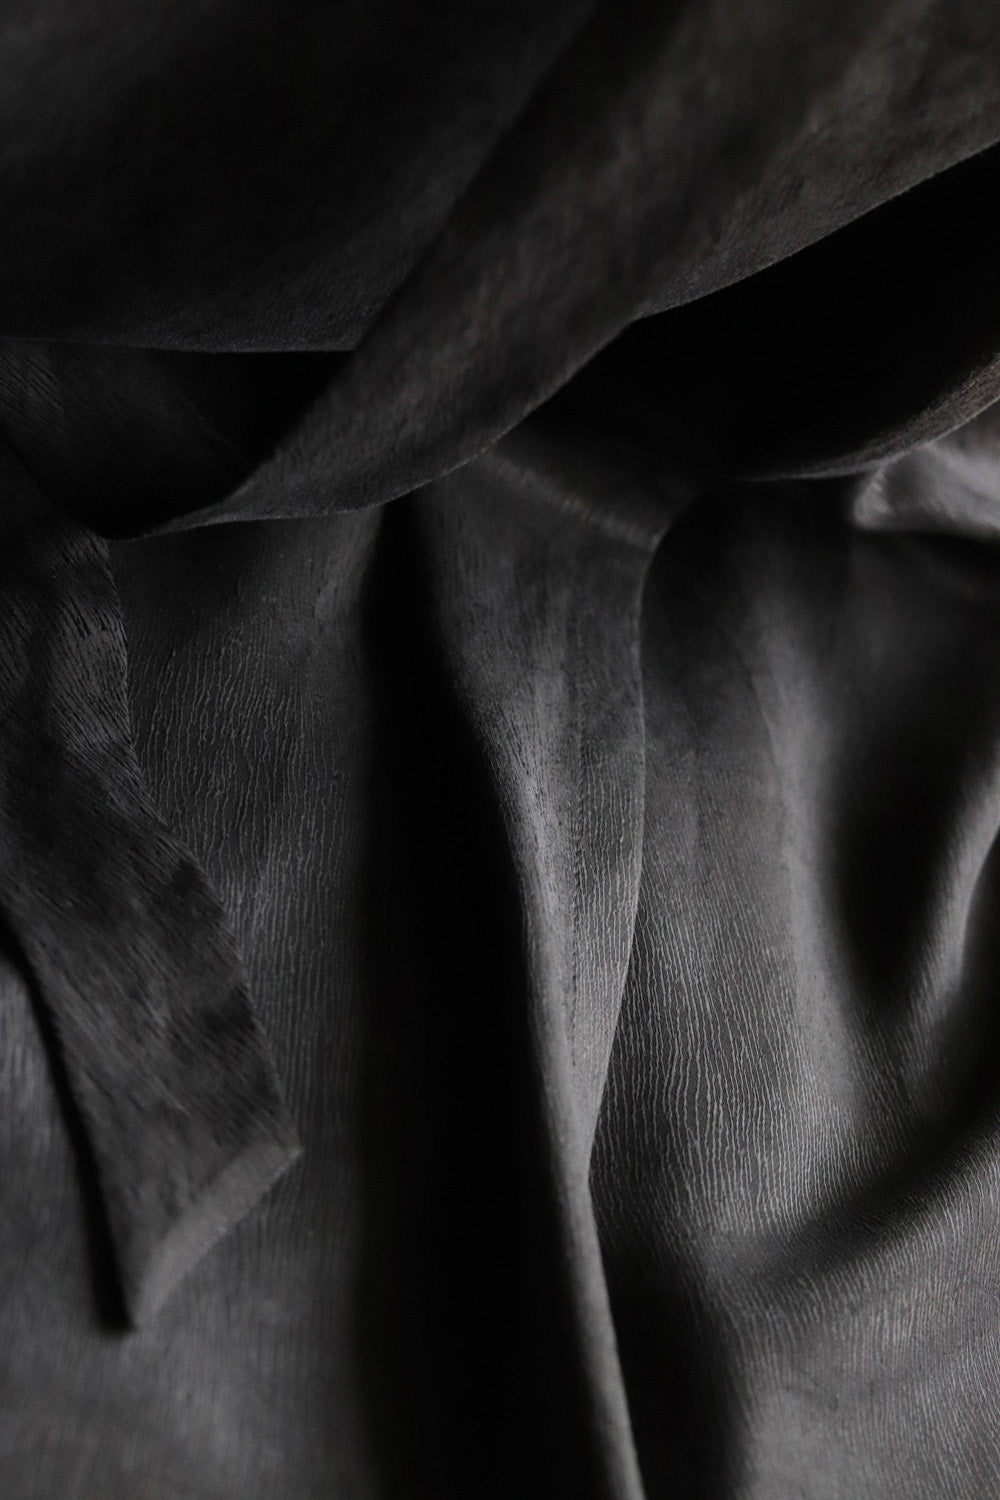 02/11 Wrap Dress shiny black detail – hello'ben store